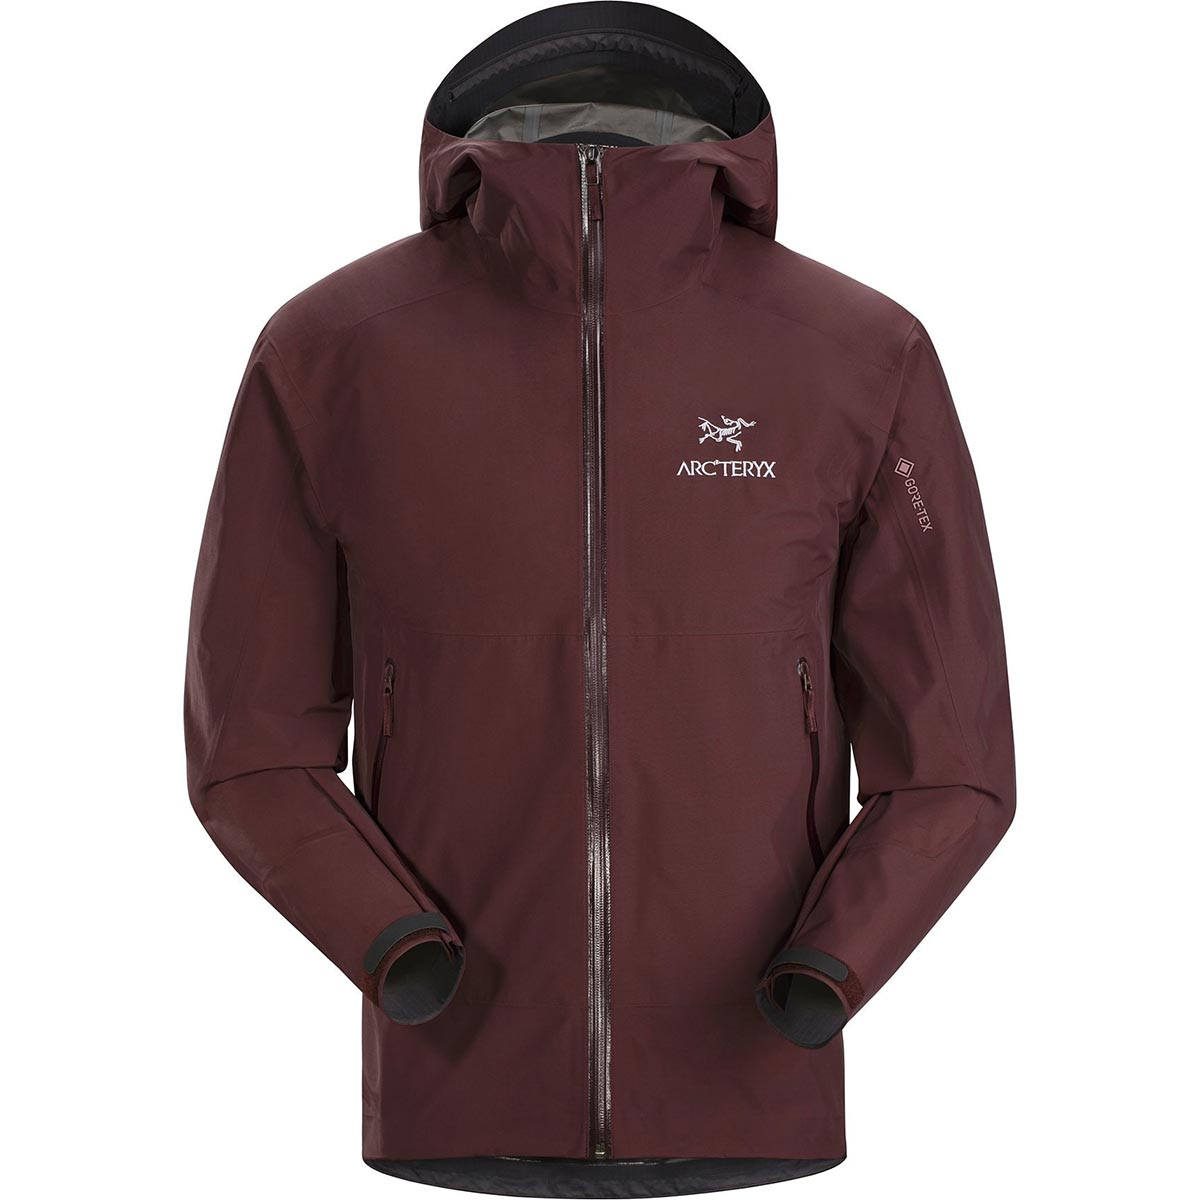 Arc'teryx Zeta SL Jacket, men's, discontinued Fall 2019 colors (free ...